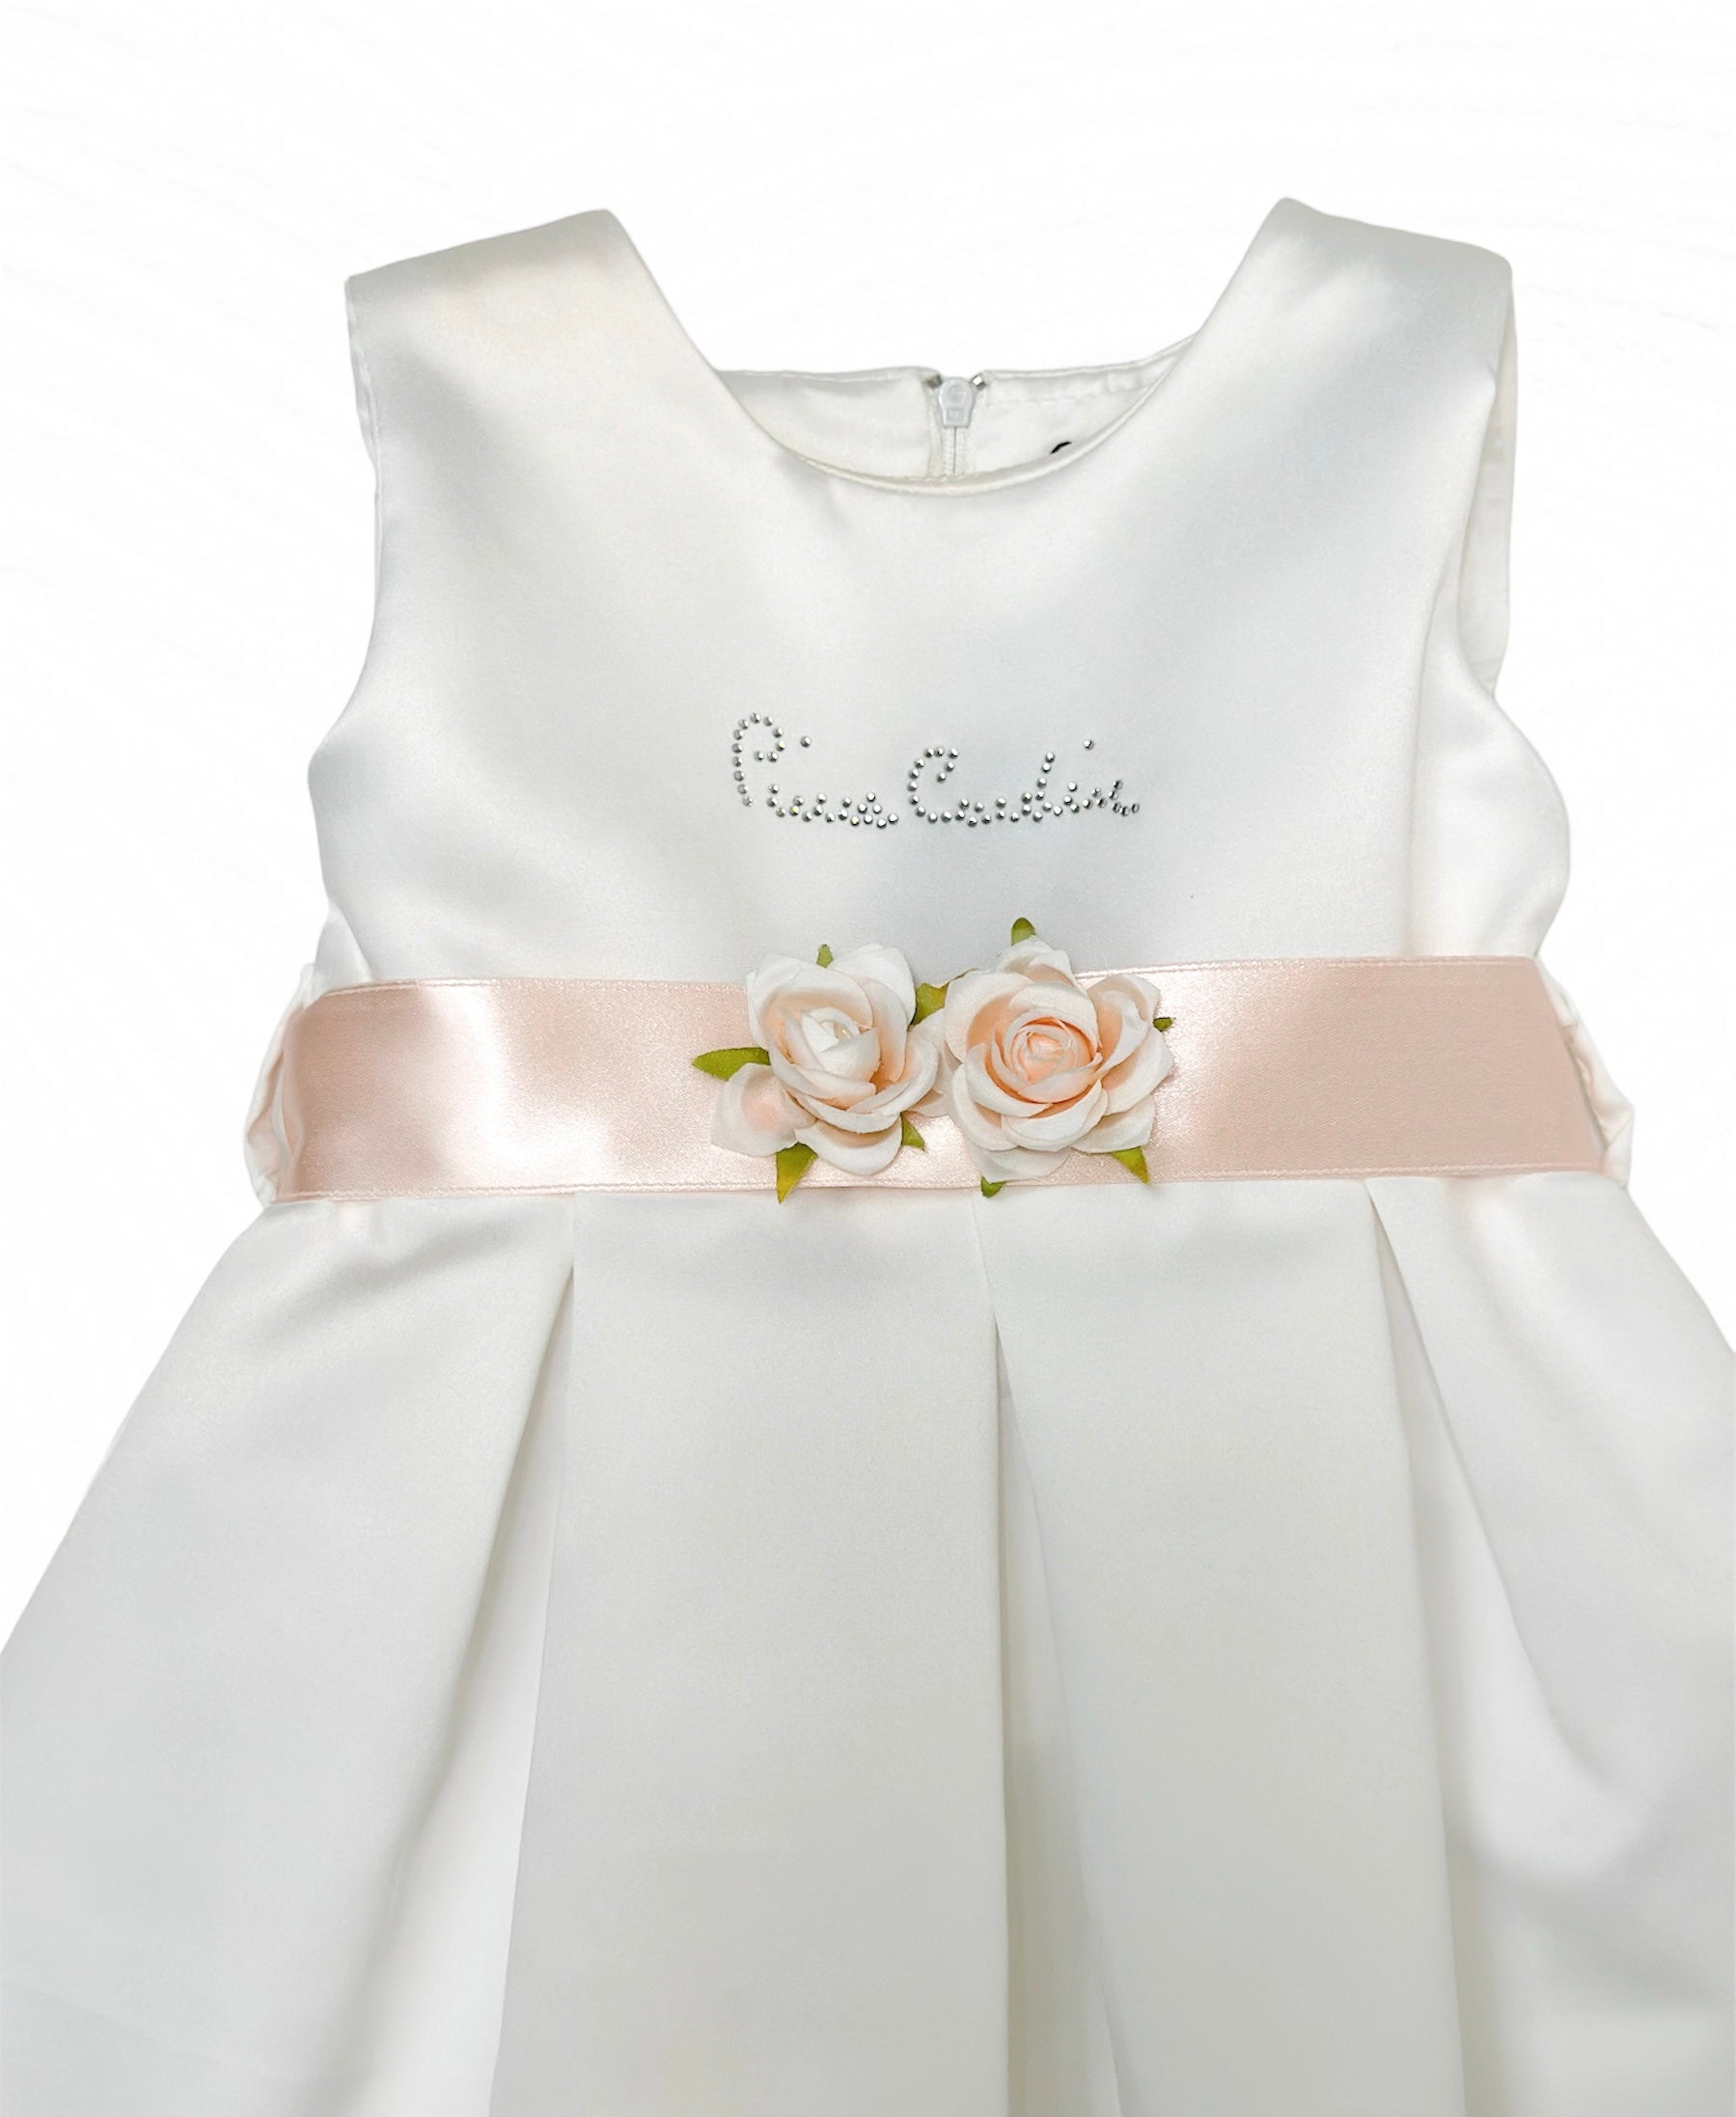 Rochiță bebeluși fetițe Pierre Cardin elegantă albă cu trandafiri